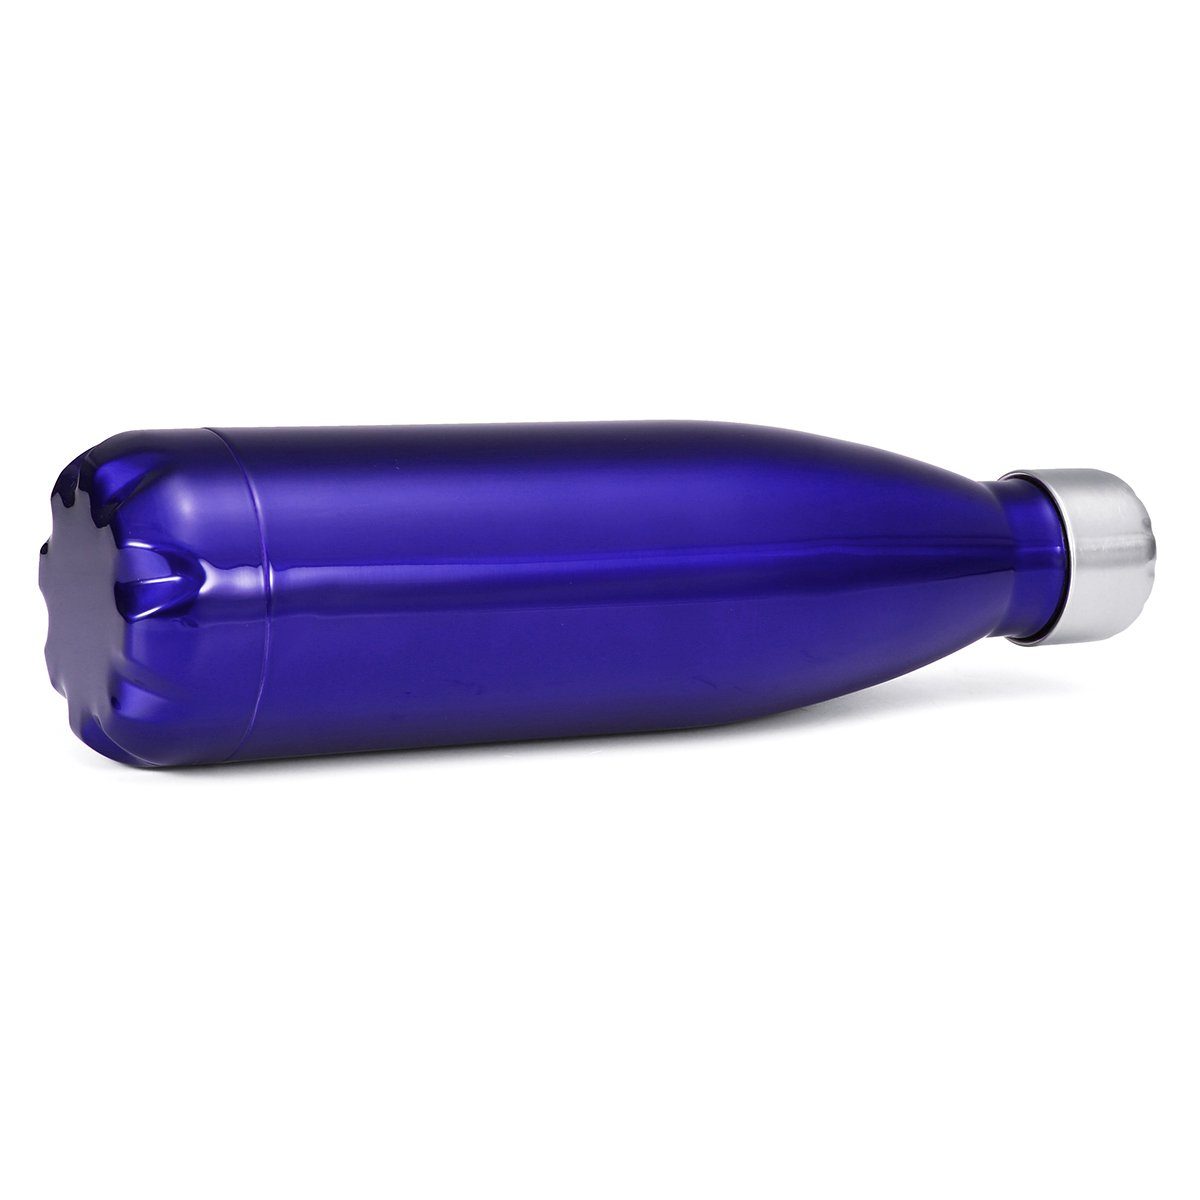 Insma Thermoflasche Isolierflasche Deckel auslaufsicherem mit doppelwandige Dunkelblau Bürste Trinkflasche, 500ml und